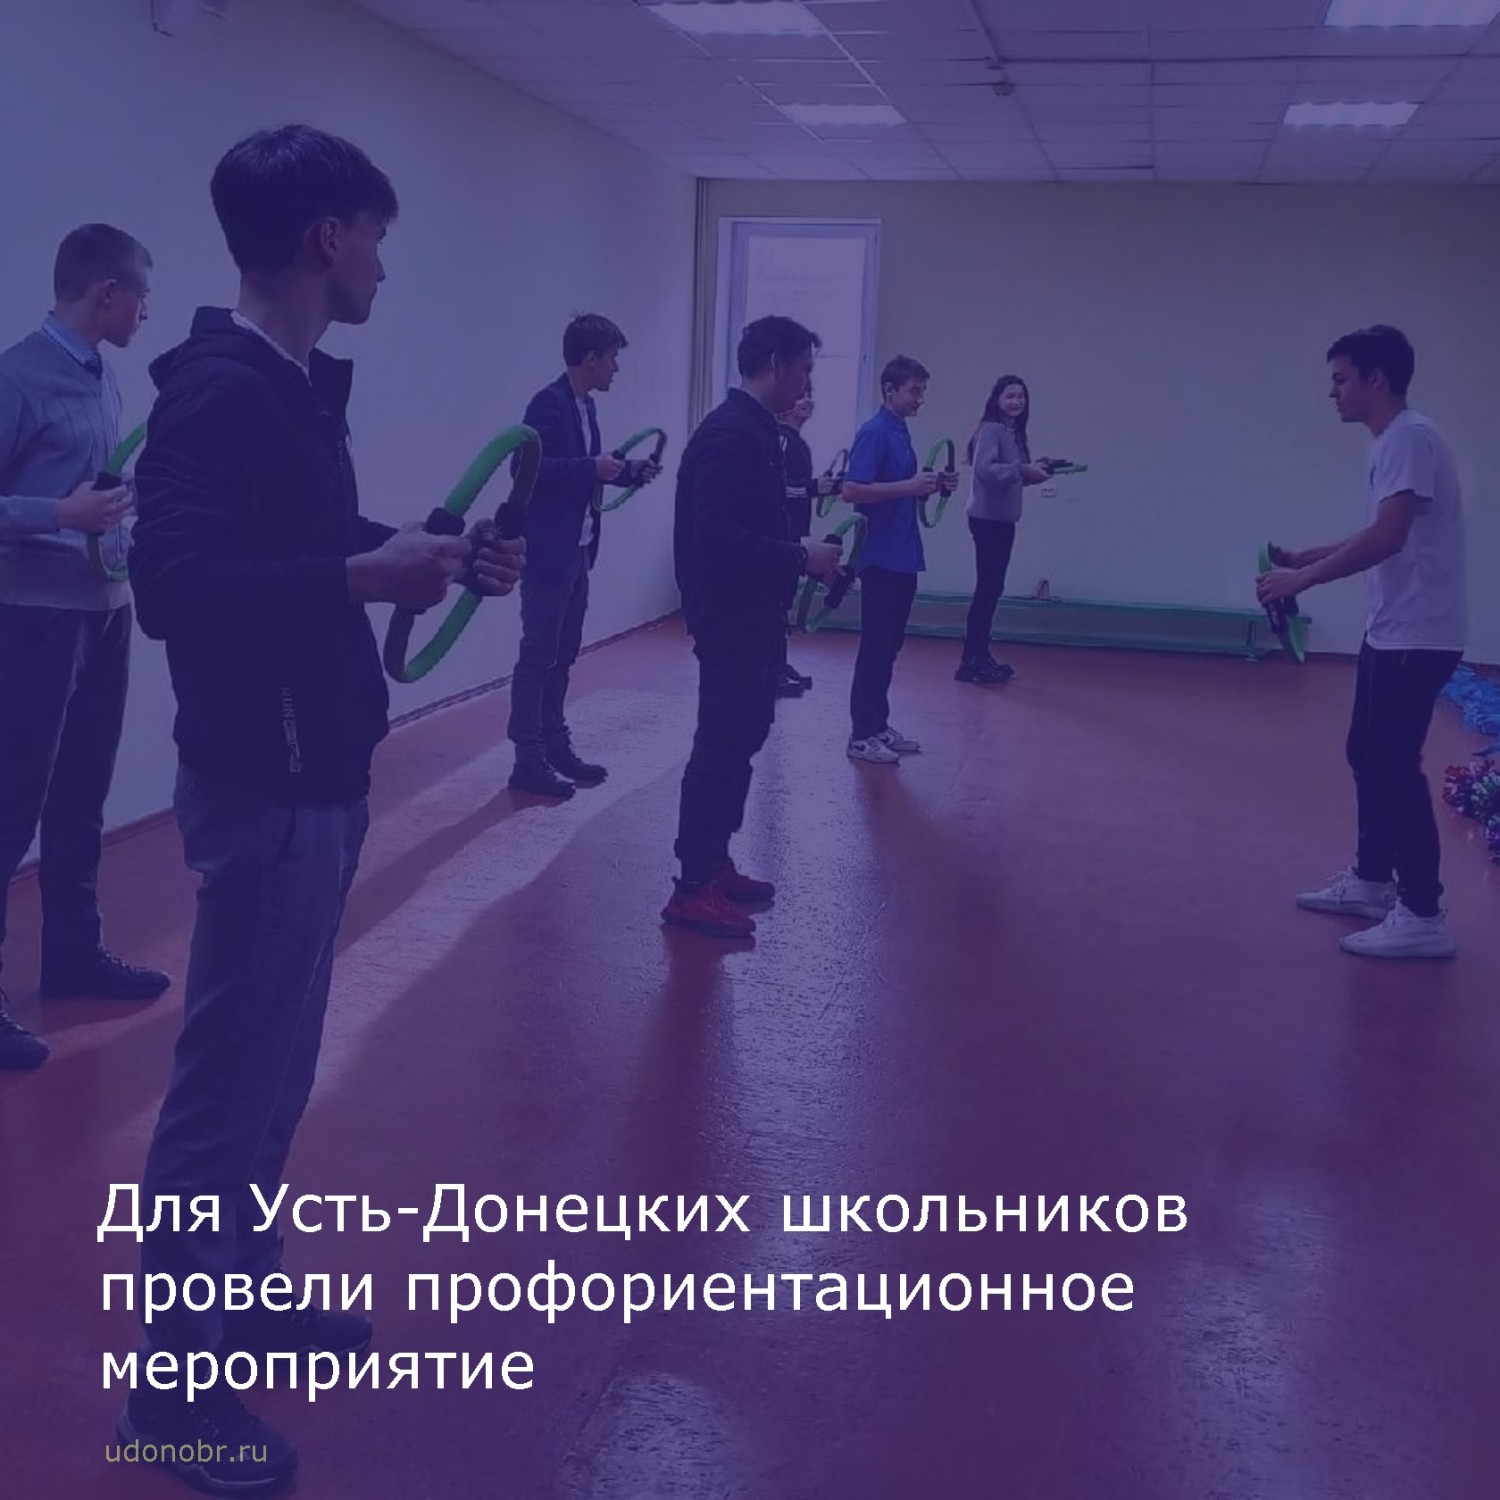 Для Усть-Донецких школьников провели профориентационное мероприятие